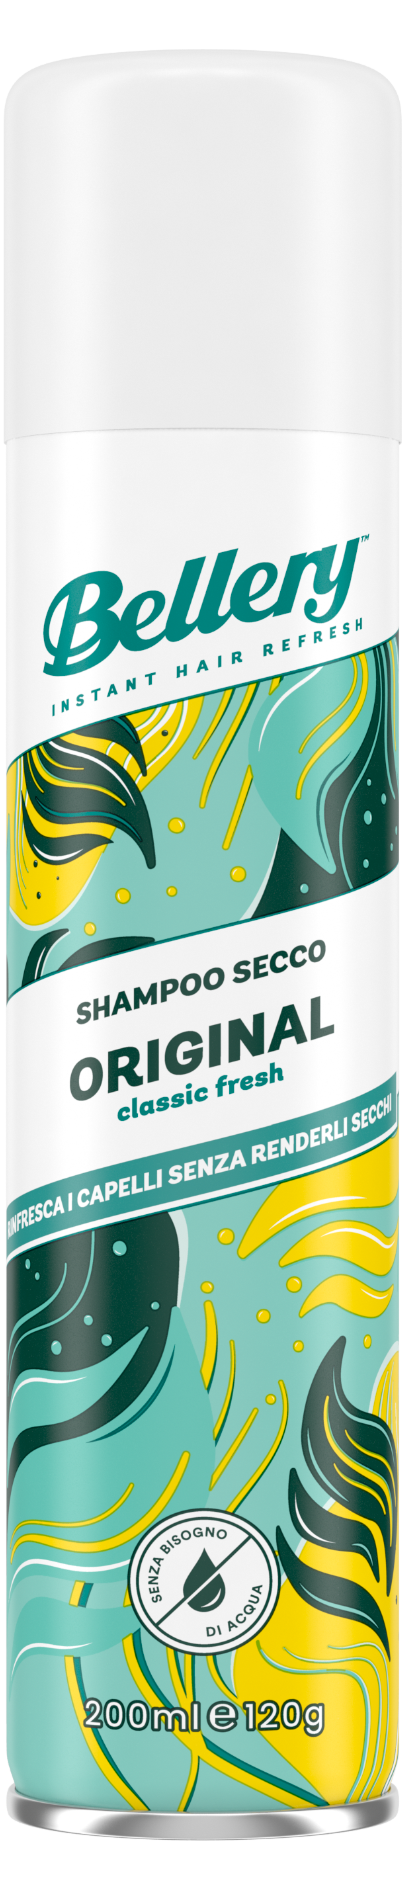 Bellery Shampoo secco Original